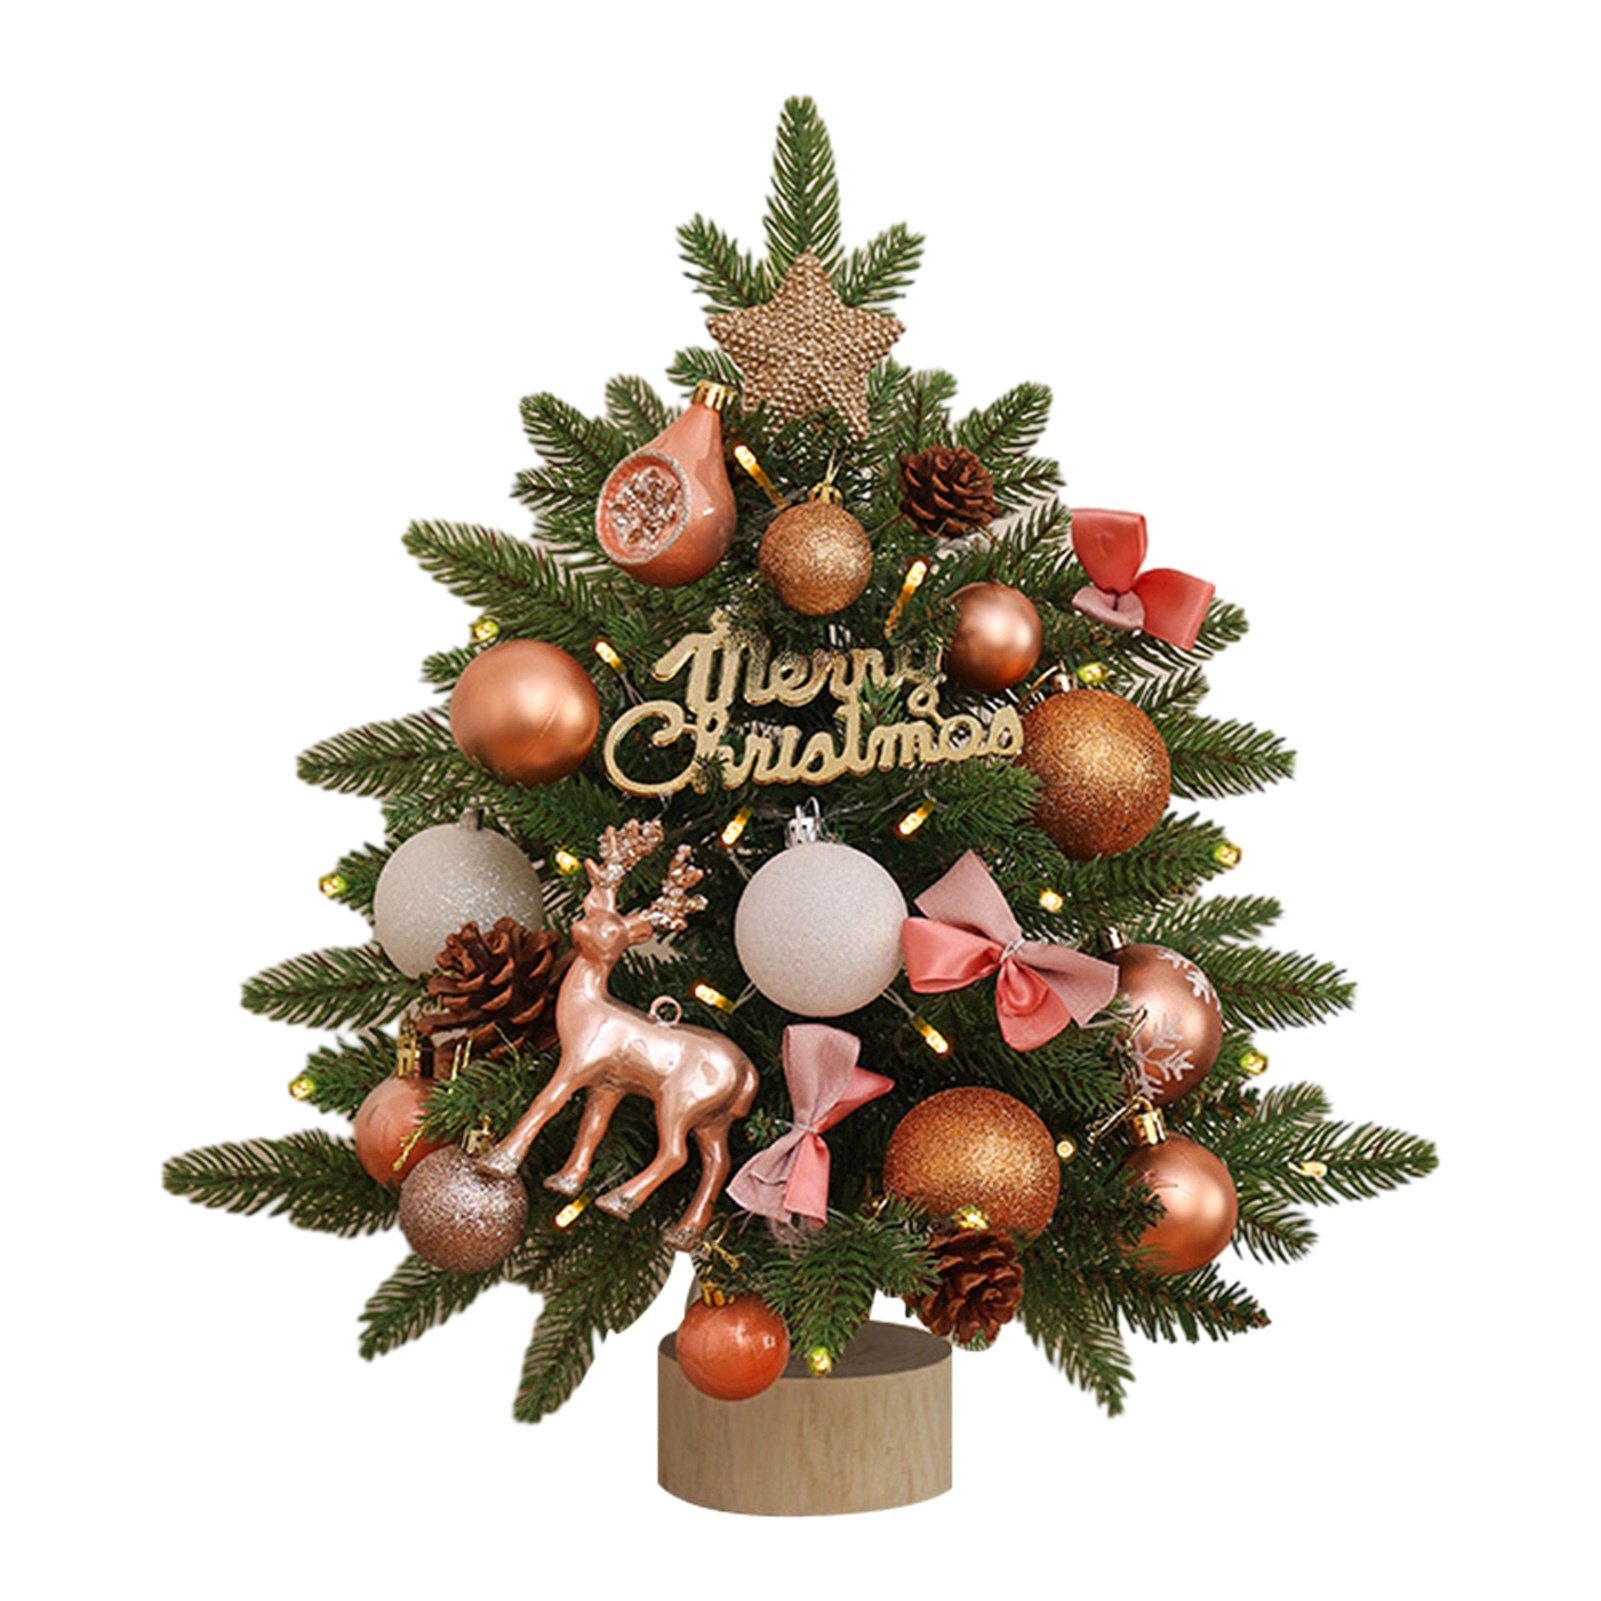 Blusmart Künstlicher Weihnachtsbaum Kleiner 45 Cm Großer Tisch-Weihnachtsbaum Mit Mehrfarbigem Dekor, Künstlicher Weihnachtsbaum champagne